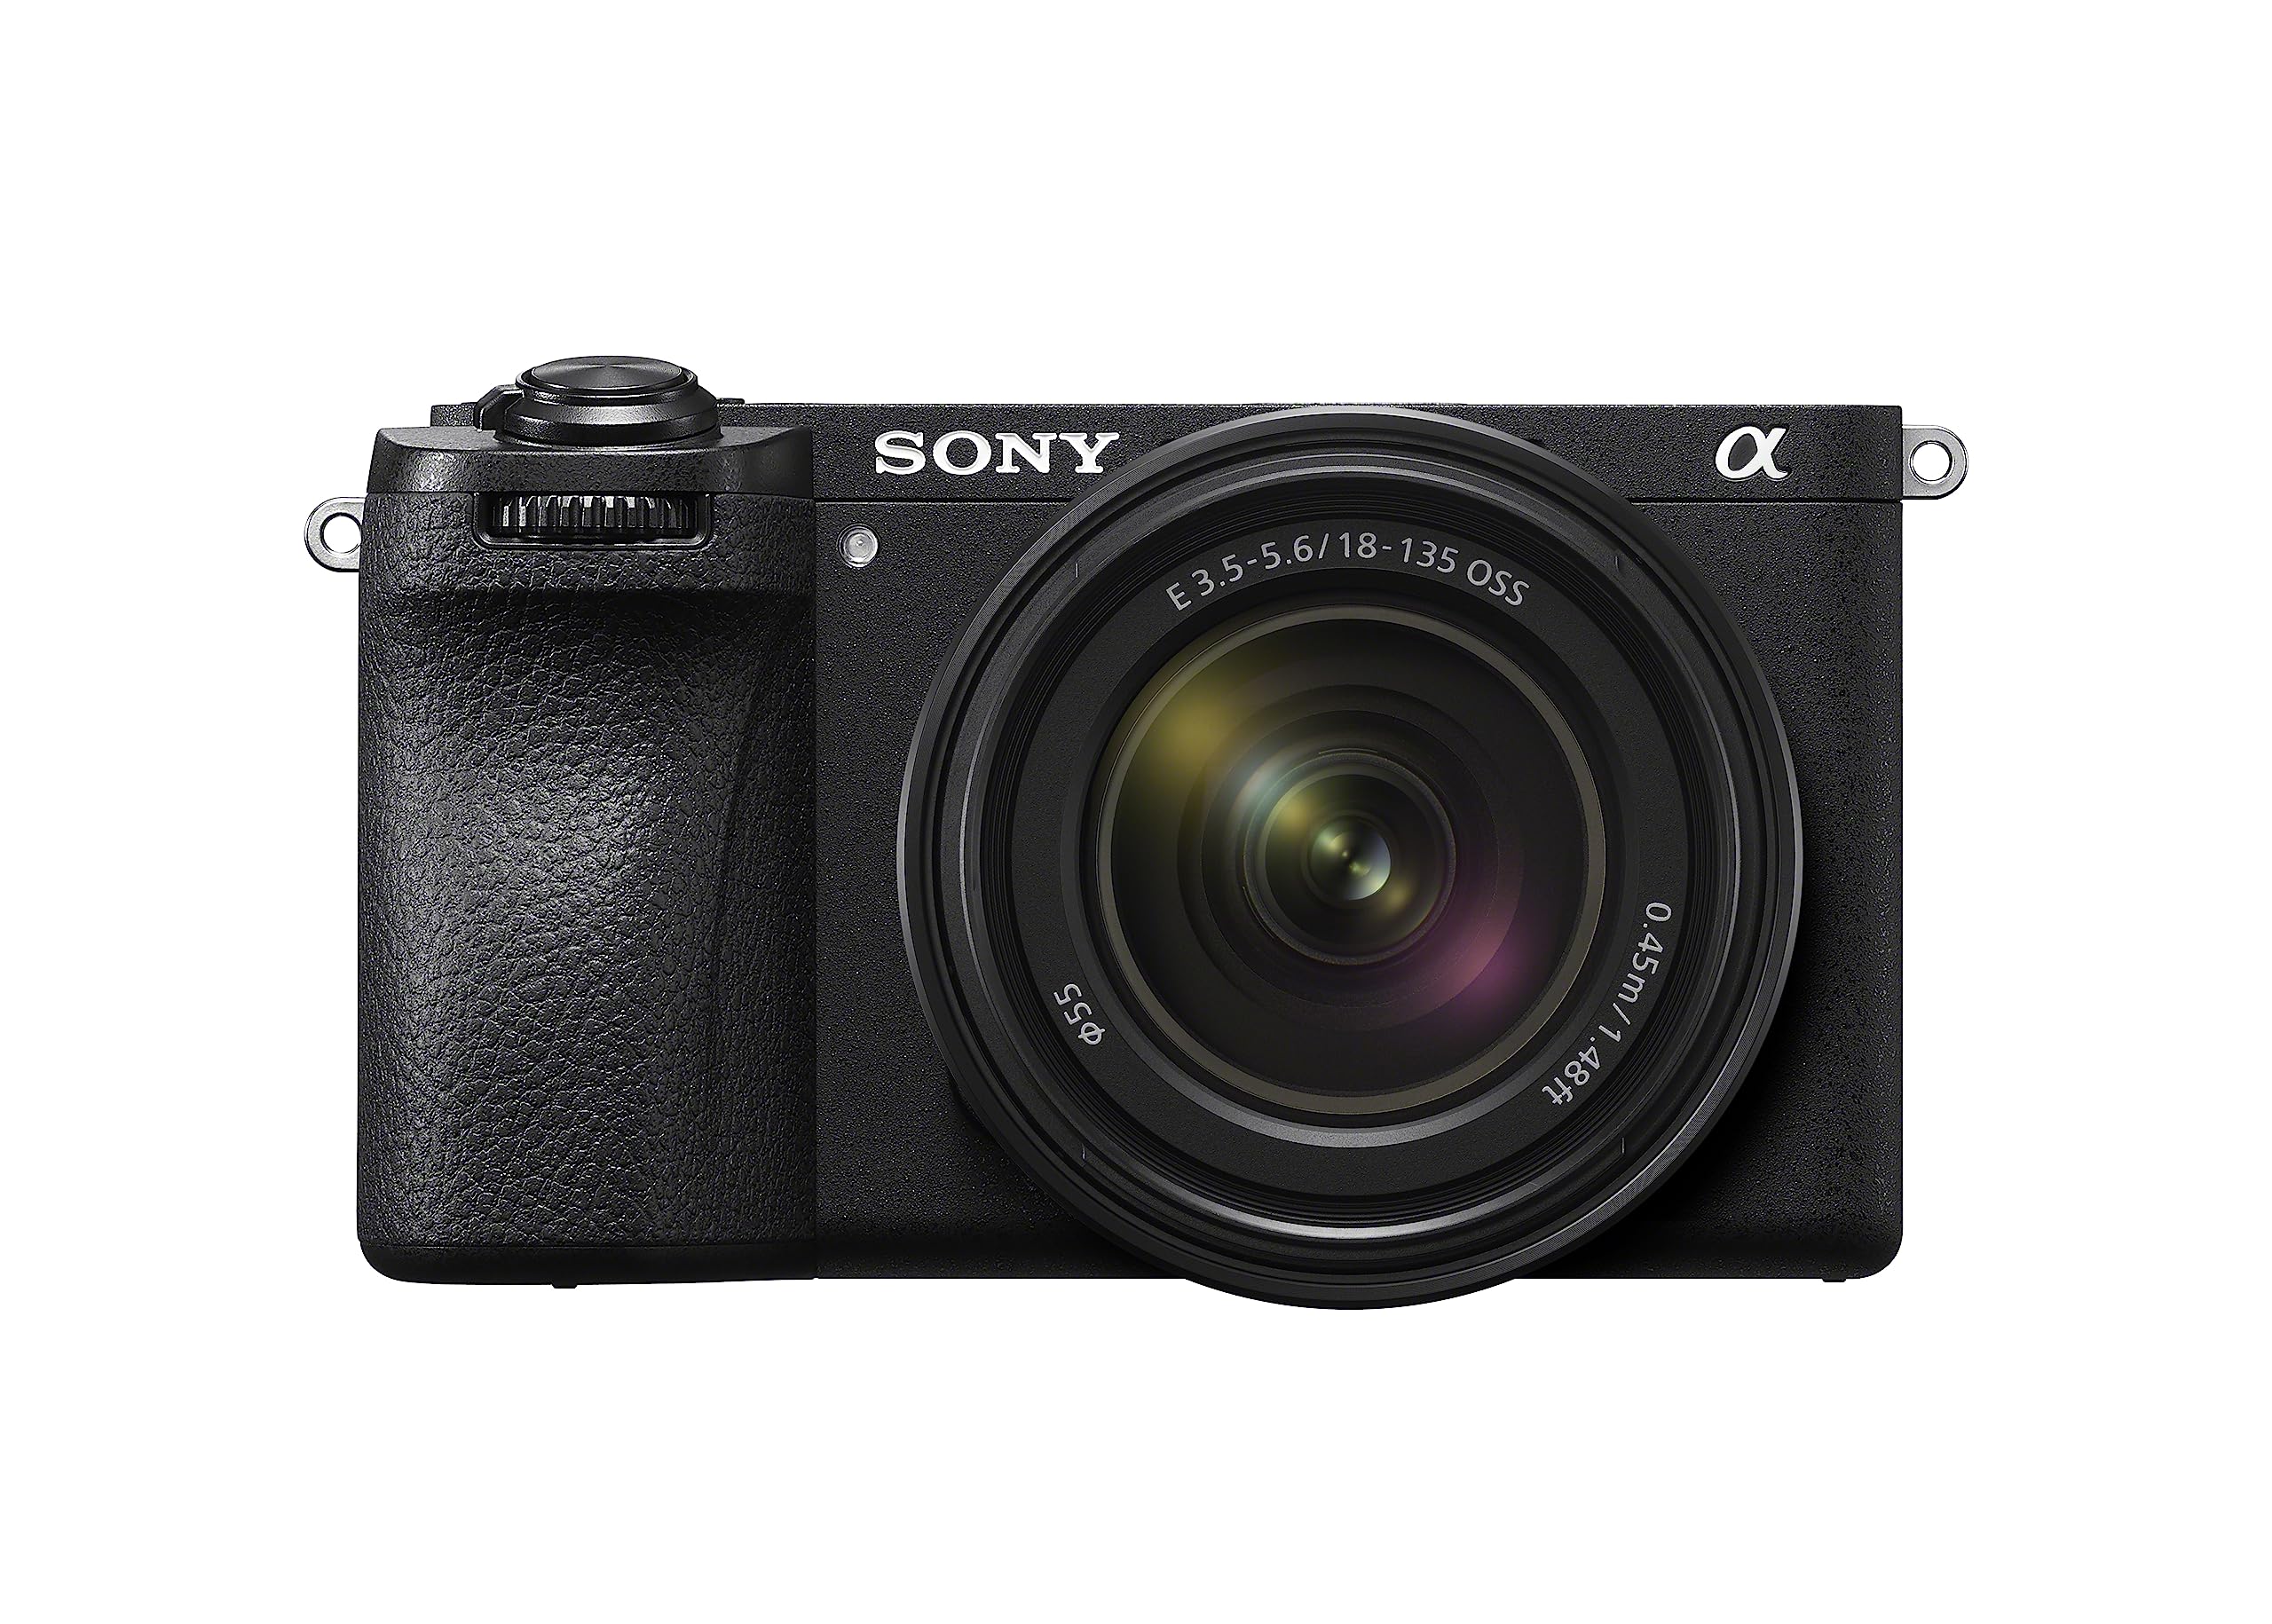 Sony Alpha 6700 Spiegellose APS-C Digitalkamera inkl. 18-135mm Zoom Objektiv, KI-basierter Autofokus, 5-Achsen-Bildstabilisierung, 4k 120p Video, neigbares Touch-Display, Webcam